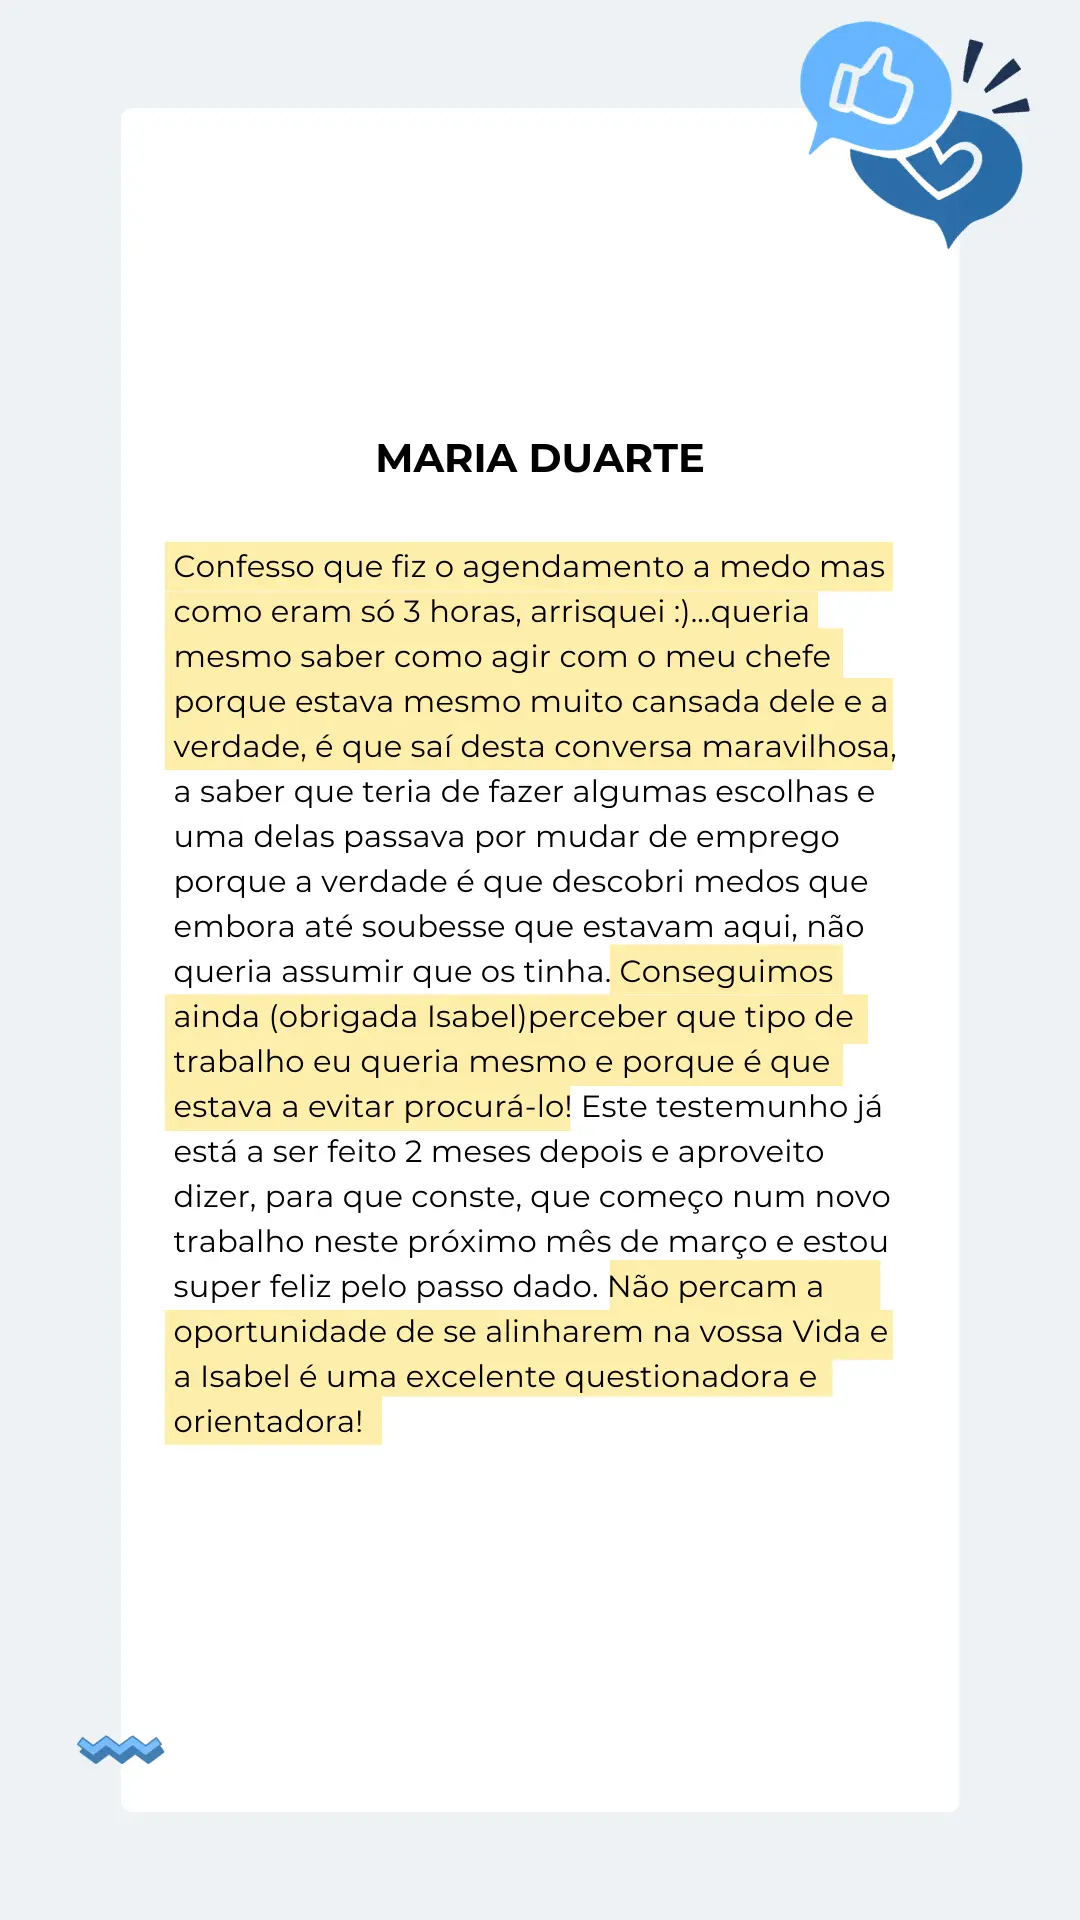 Maria Duarte